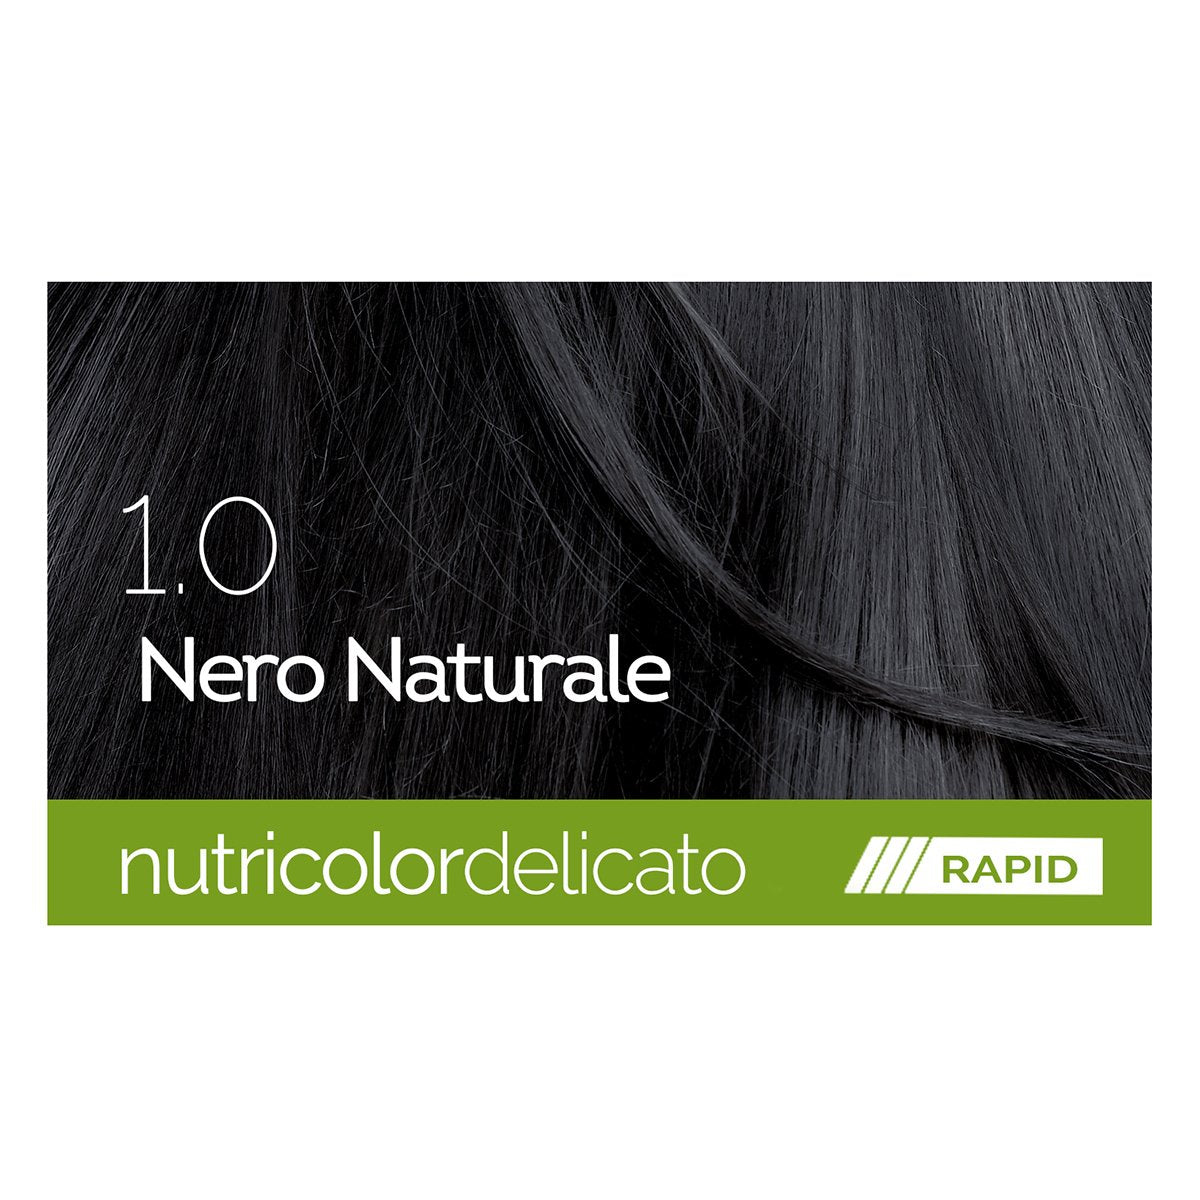 Biokap - Nutricolor Delicato Rapid (4 tonos) - ebeauty